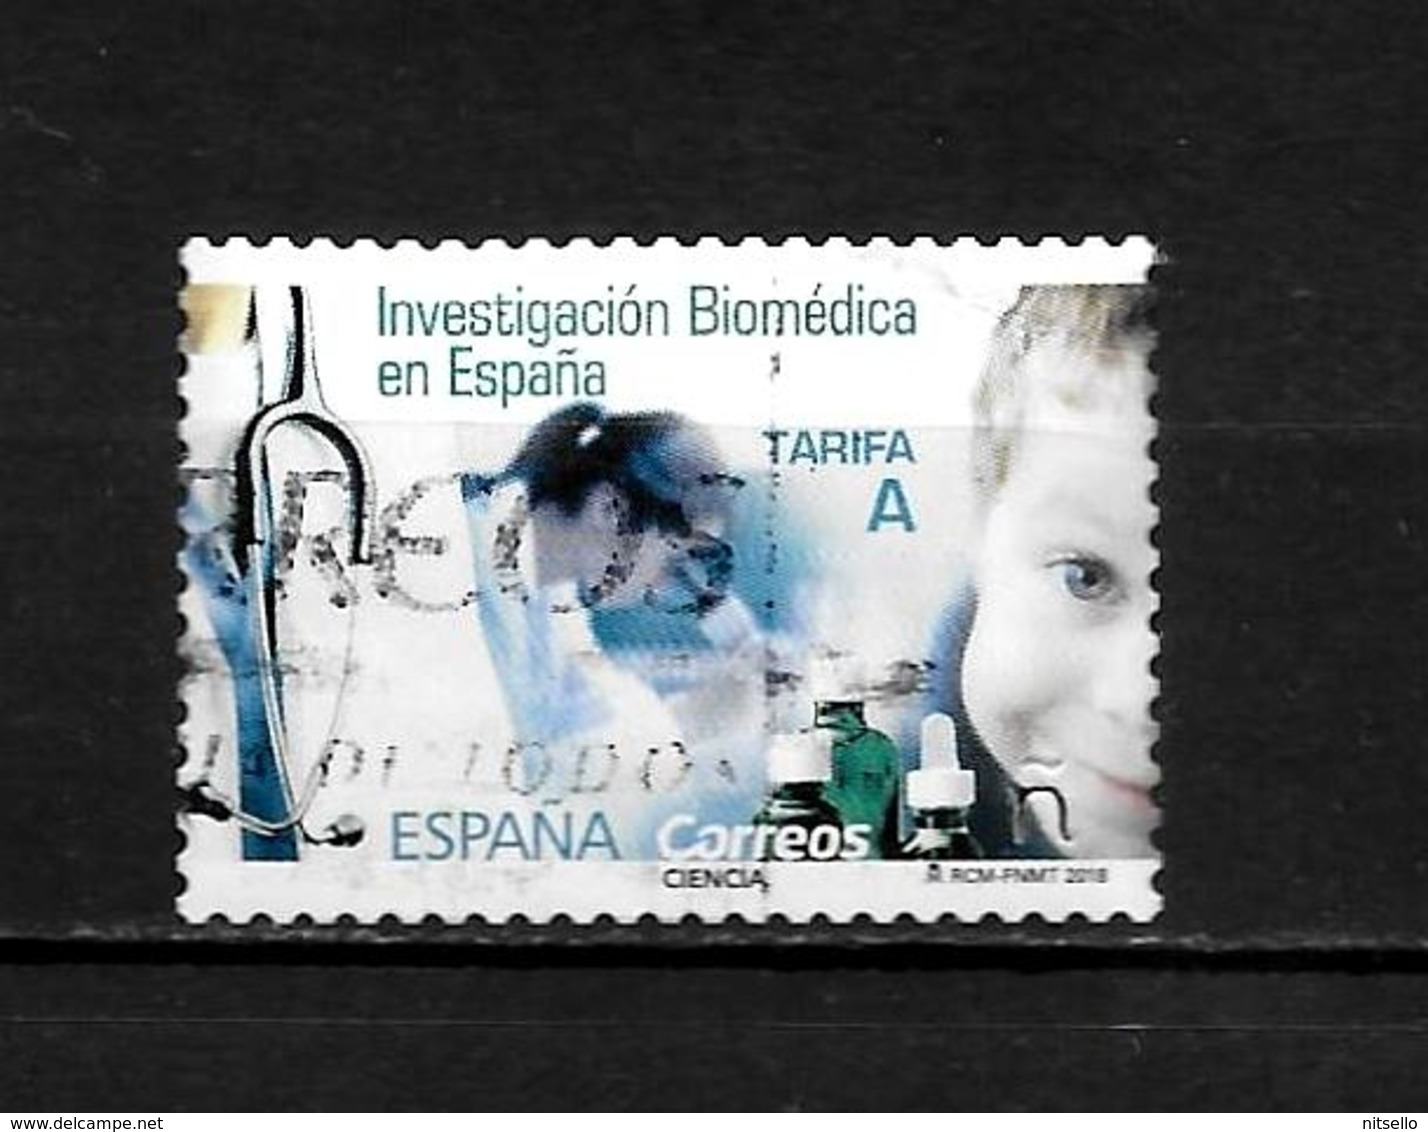 LOTE 2030 ///  ESPAÑA 2018   INVESTIGACION BIOMEDICA EN ESPAÑA  ¡¡¡ OFERTA - LIQUIDATION !!! JE LIQUIDE !!! - Gebraucht